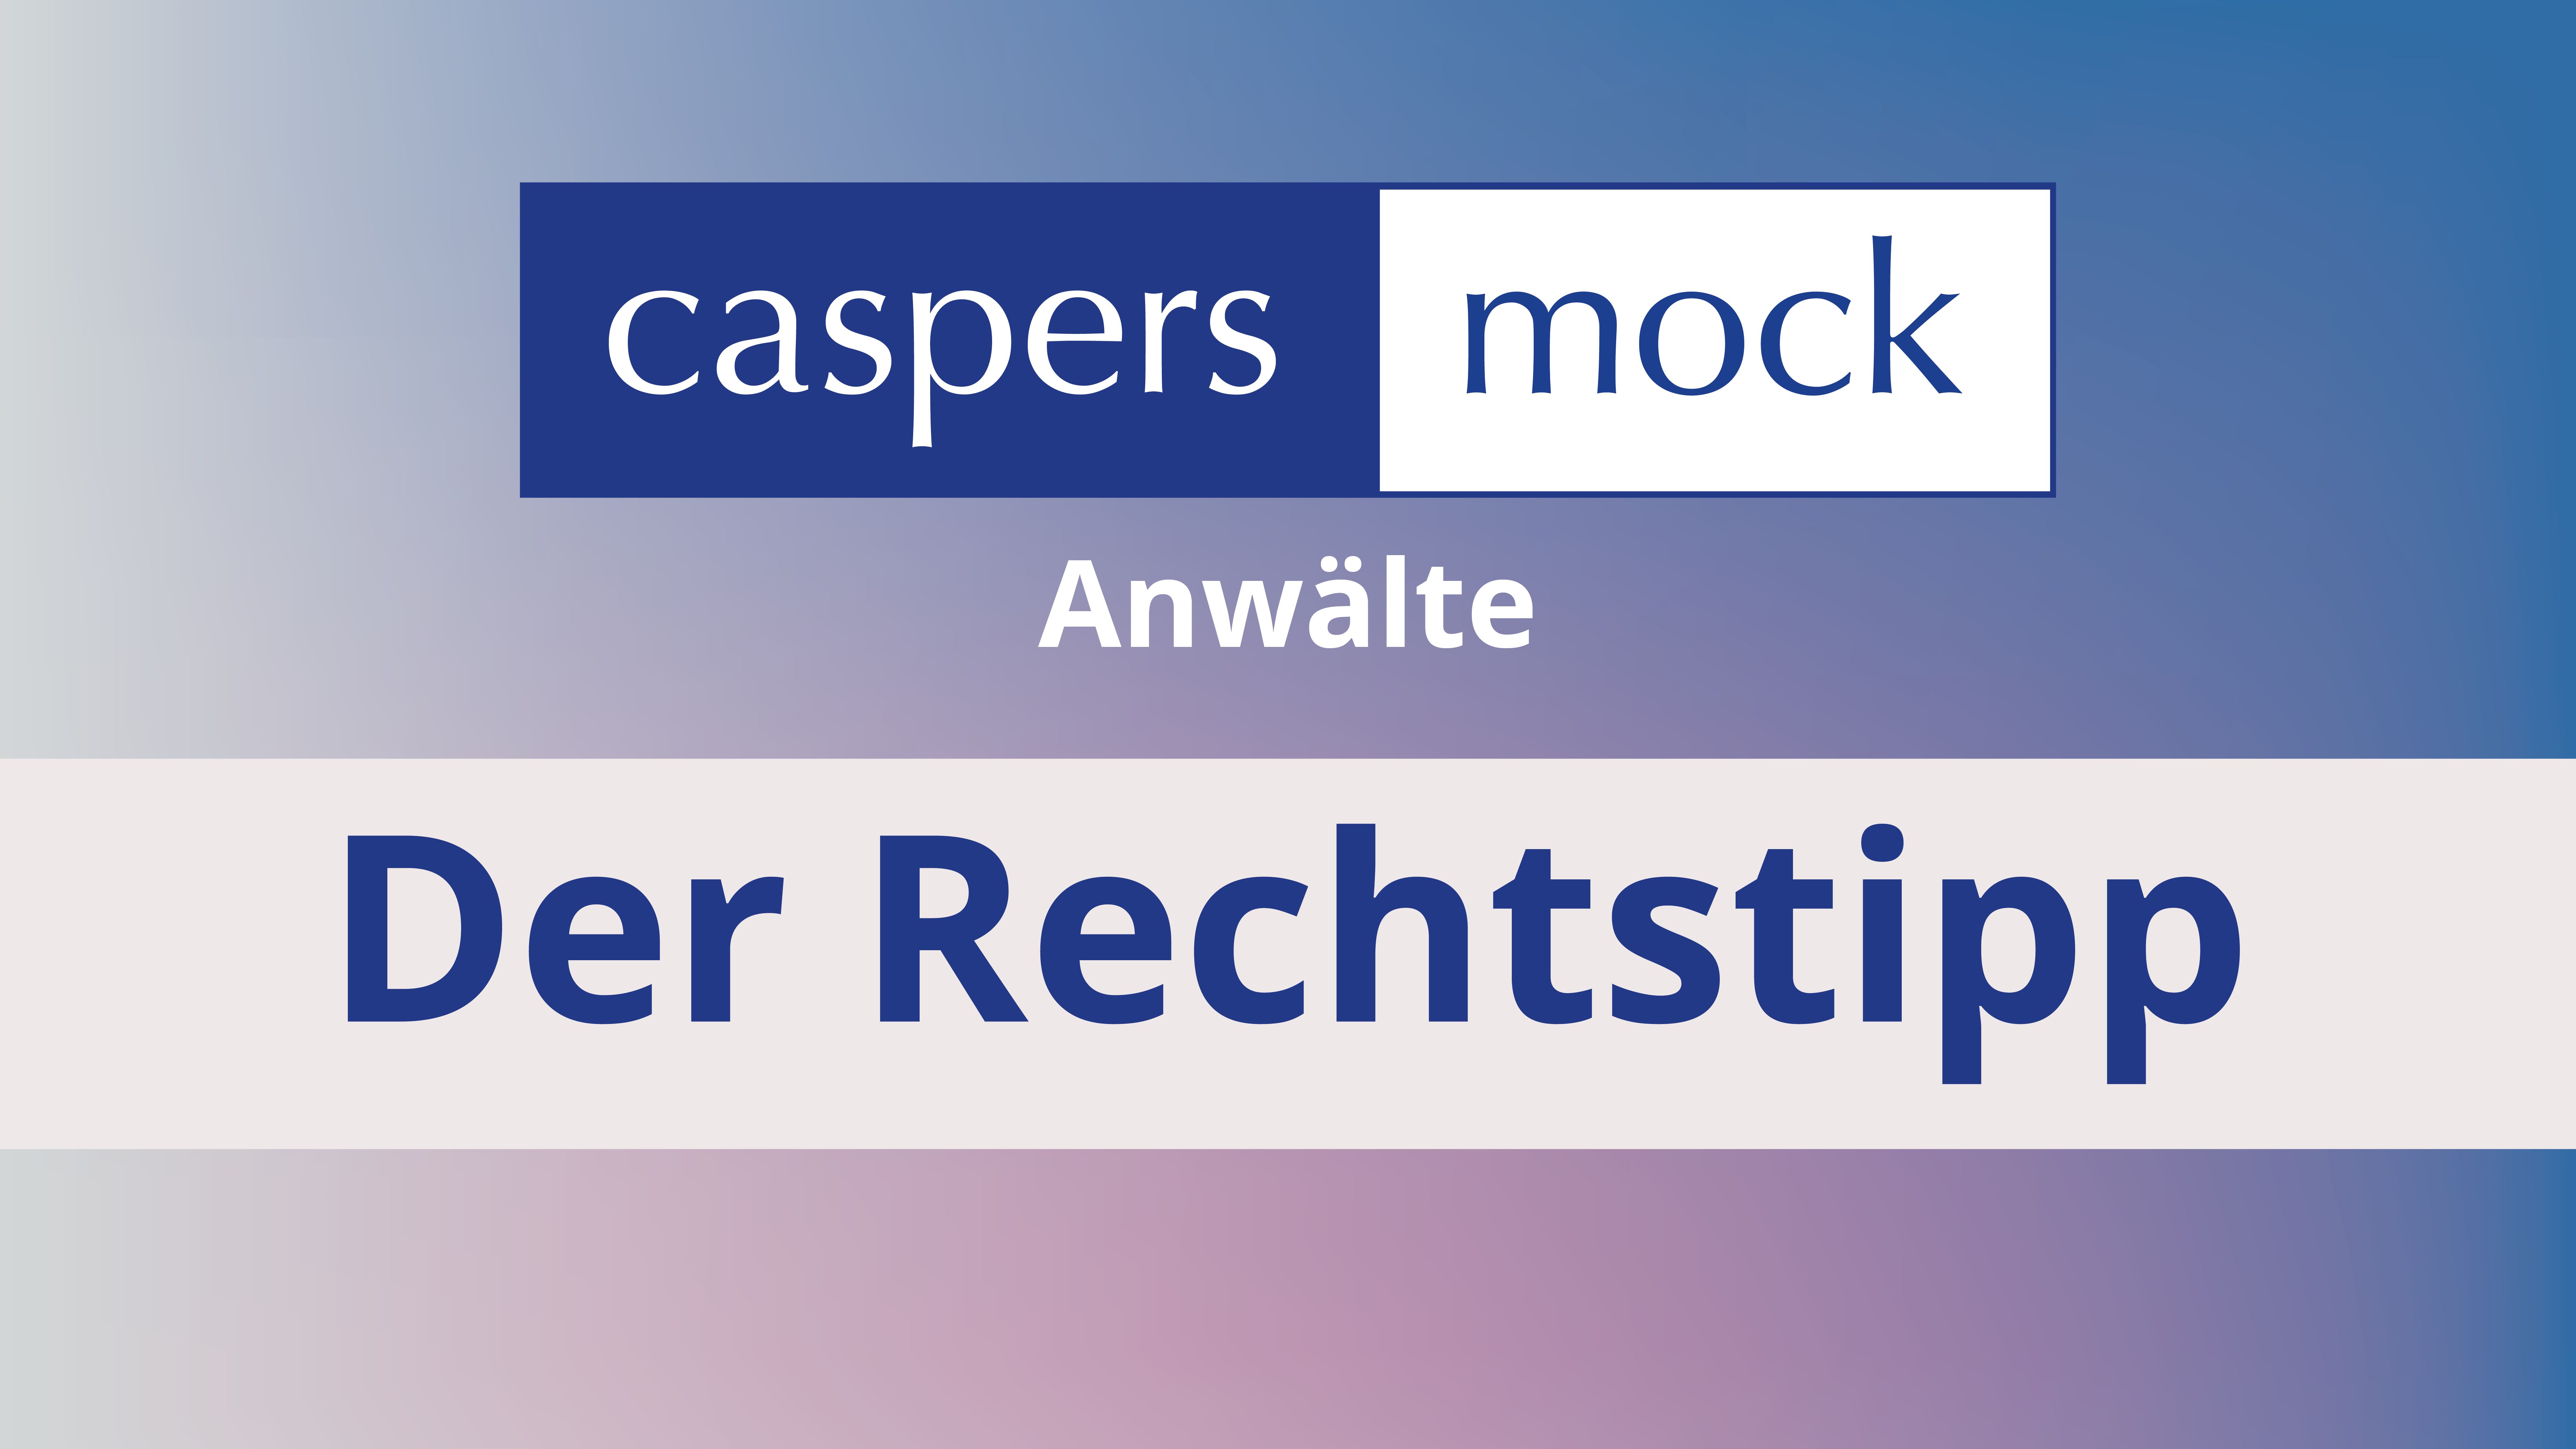 caspers Mock - Der Rechtstipp